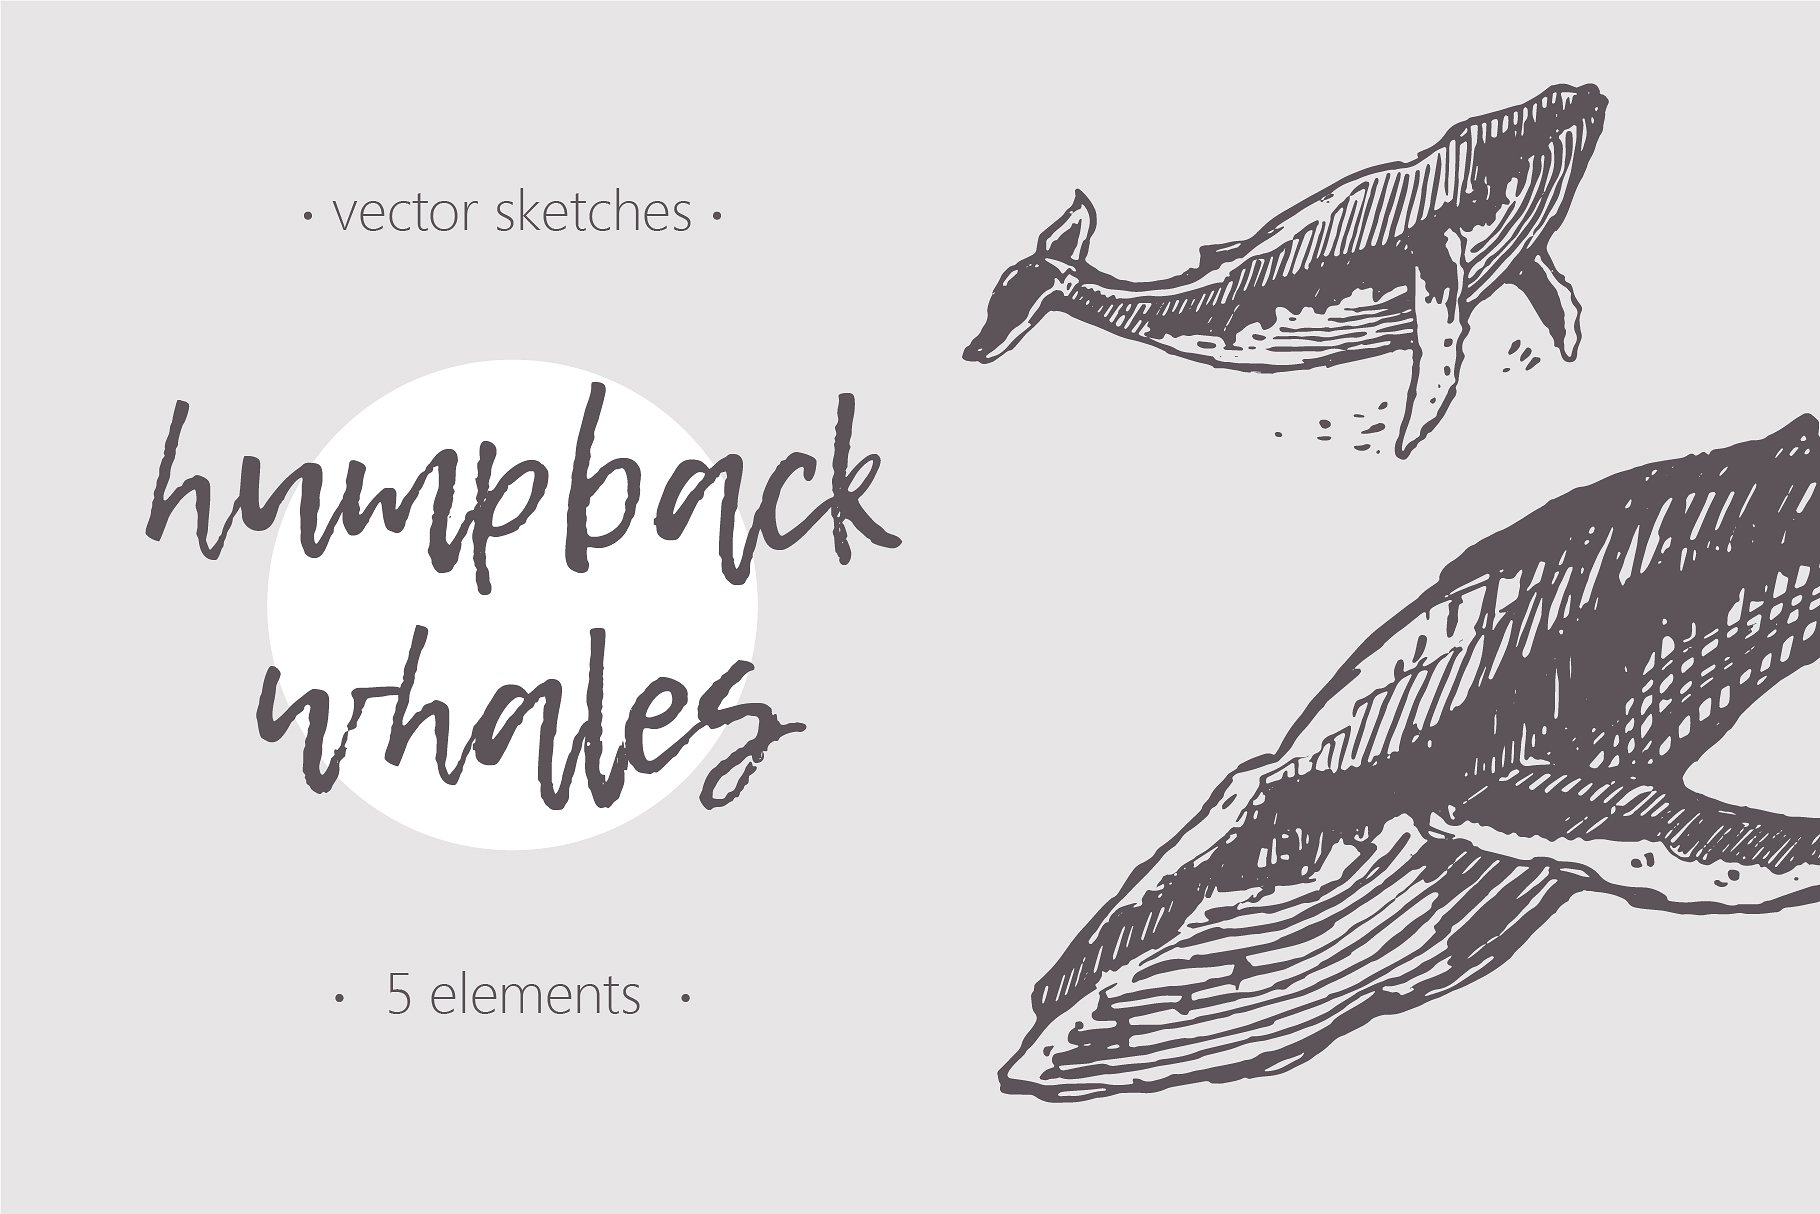 鲸鱼的素描插画 Sketches of humpback w